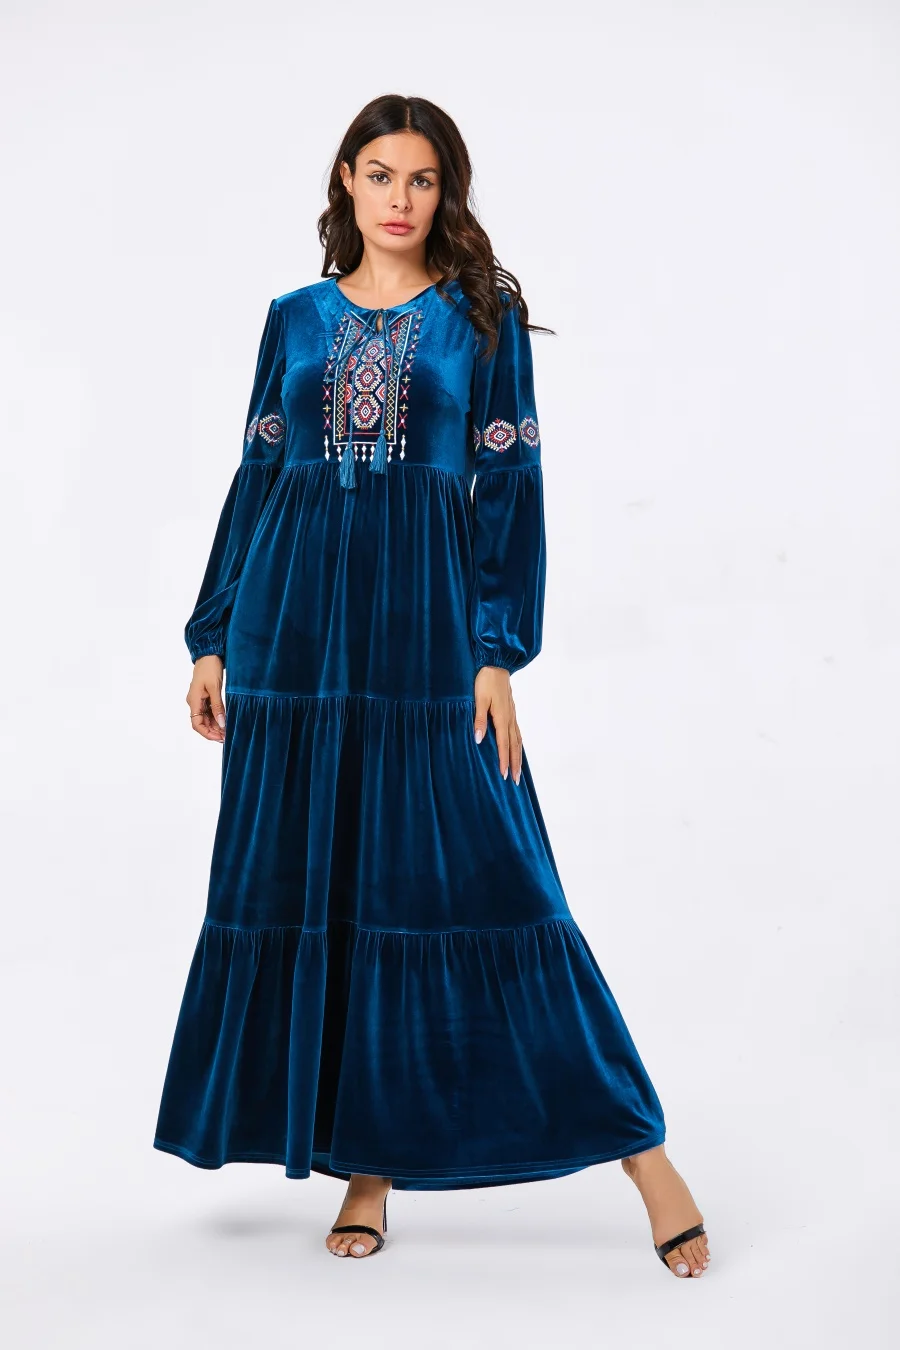 Siskakia вельветовое длинное платье, повседневное, этническое, Цветочная вышивка, макси платья с длинным рукавом, зима, Свинг, аравийская одежда, 26 цветов